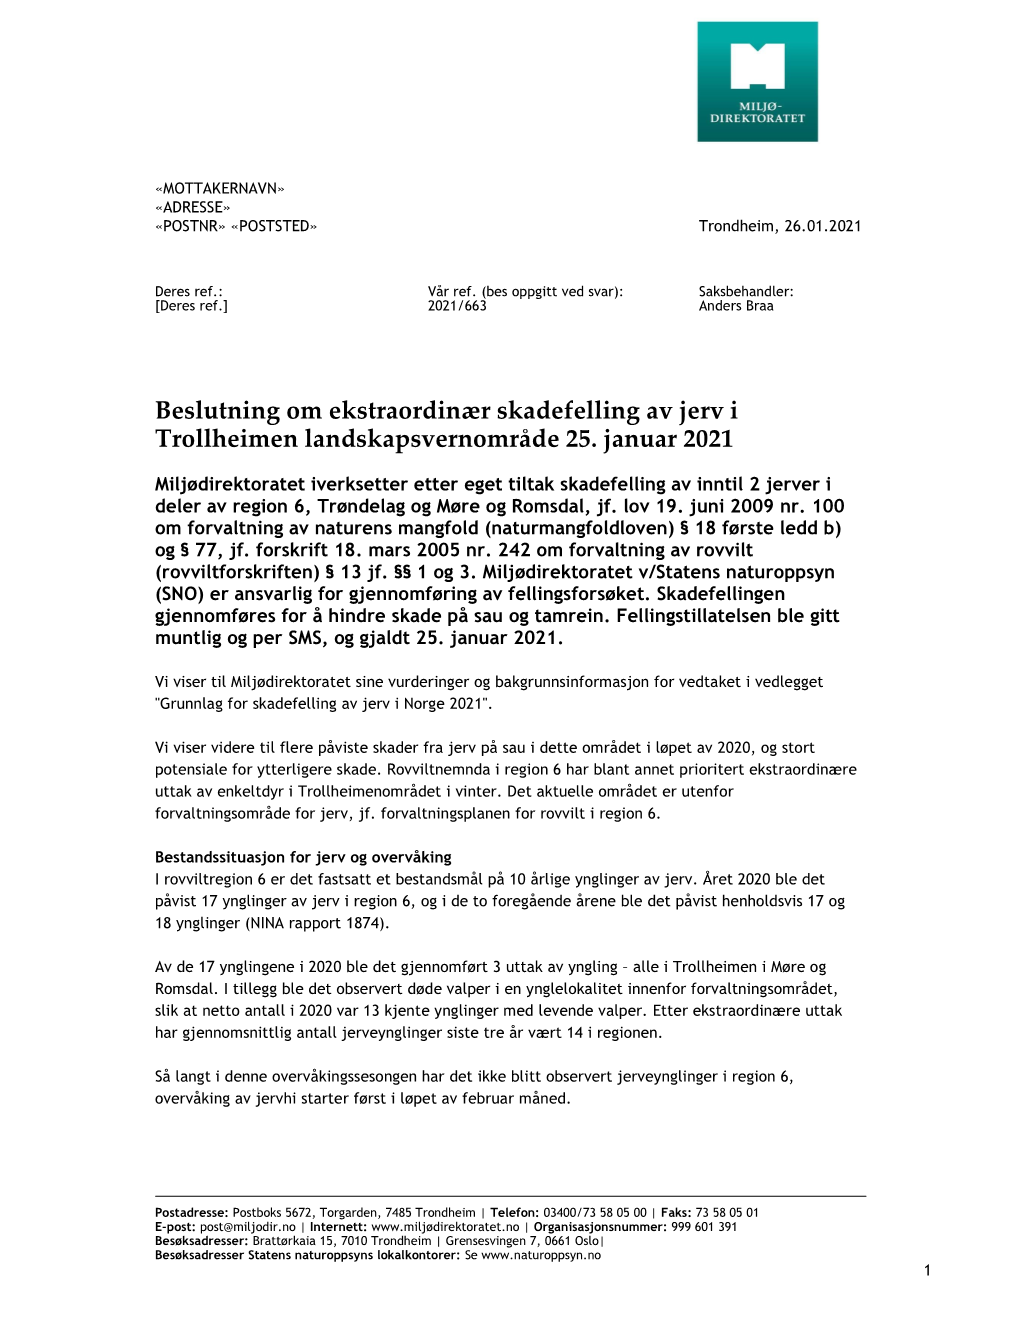 Beslutning Om Ekstraordinær Skadefelling Av Jerv I Trollheimen Landskapsvernområde 25